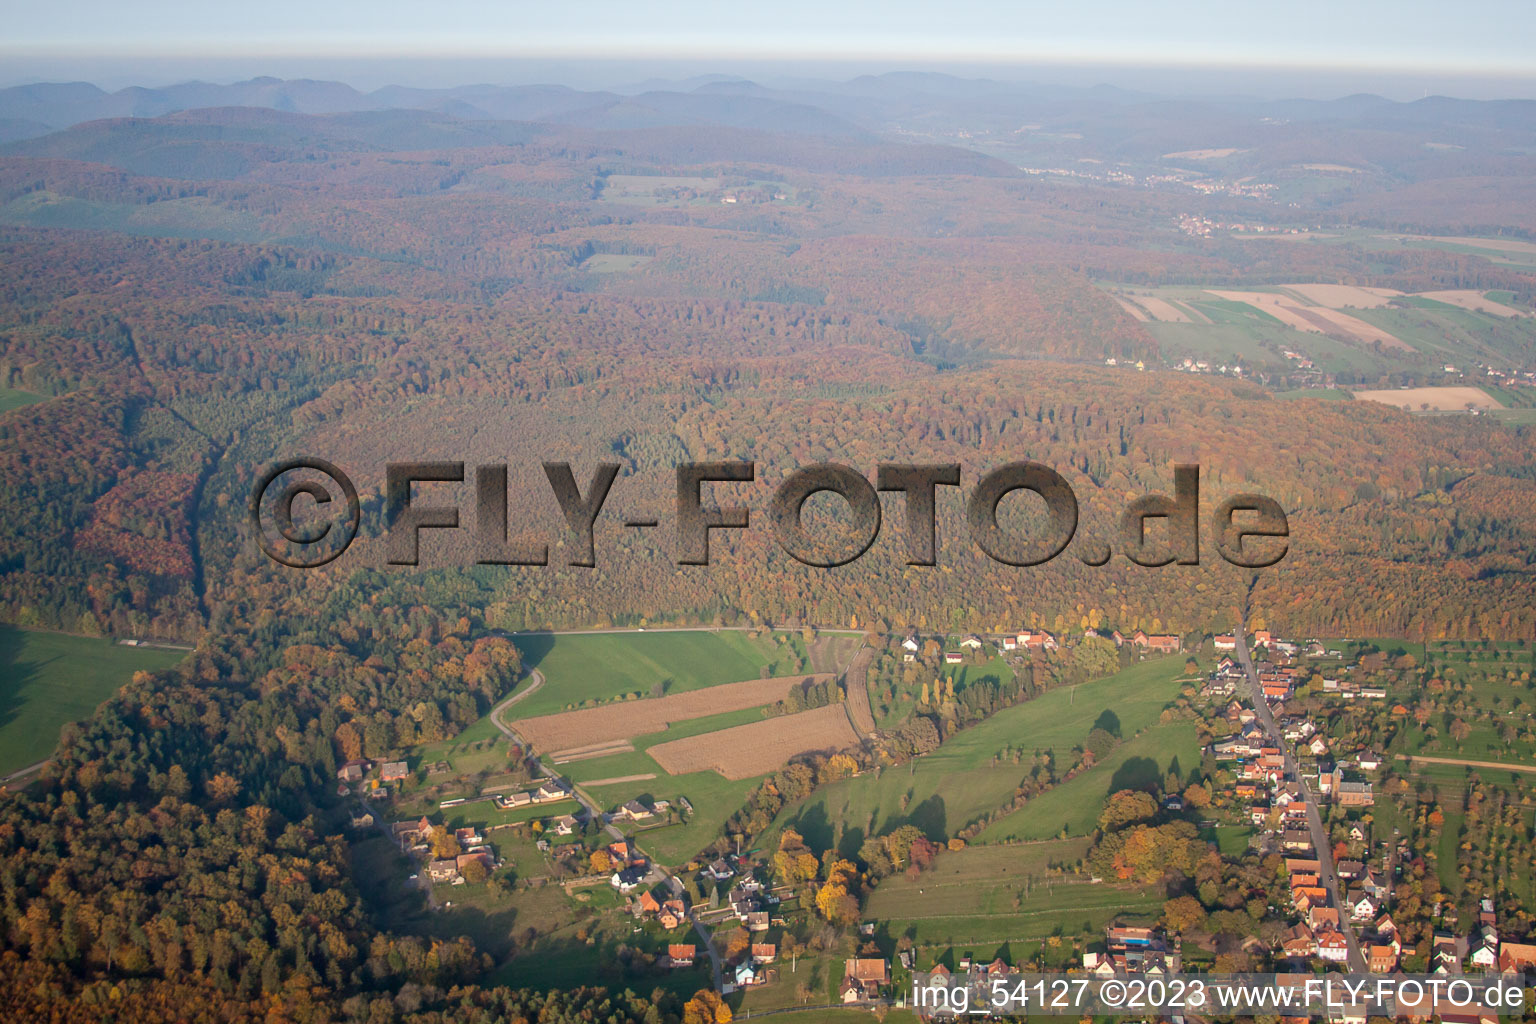 Nehwiller-près-Wœrth dans le département Bas Rhin, France du point de vue du drone